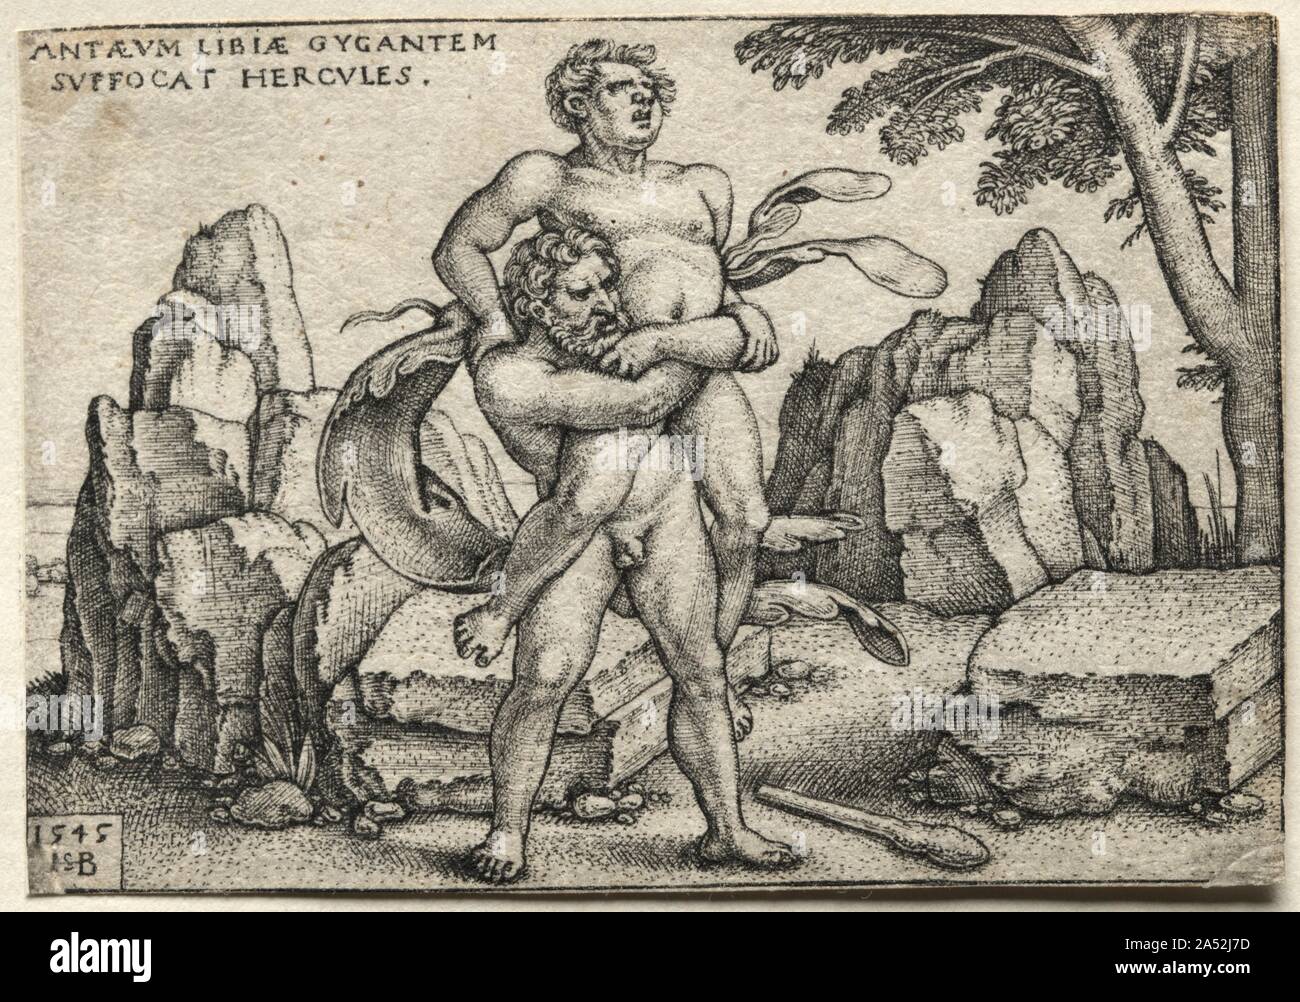 Les travaux d'Hercule : Concassage Hercules Antaeus, 1545. Le géant Antée était invincible tant qu'il a touché la terre, qui lui a donné sa puissance écrasante. Dans cette scène, habilement Hercules Antaeus se soulève du sol, d'affaiblir et de l'écraser. Ce conte était particulièrement populaire pendant la Renaissance, quand elle était perçue comme une allégorie de la force morale plus triumphiant désirs matériels. Beham a été l'un des graveurs d'Allemand parlé aujourd'hui comme le "petit maître." Ils ont établi leur prouesse artistique remarquable gravure en petits tirages, faisant appel aux collectionneurs fa Banque D'Images